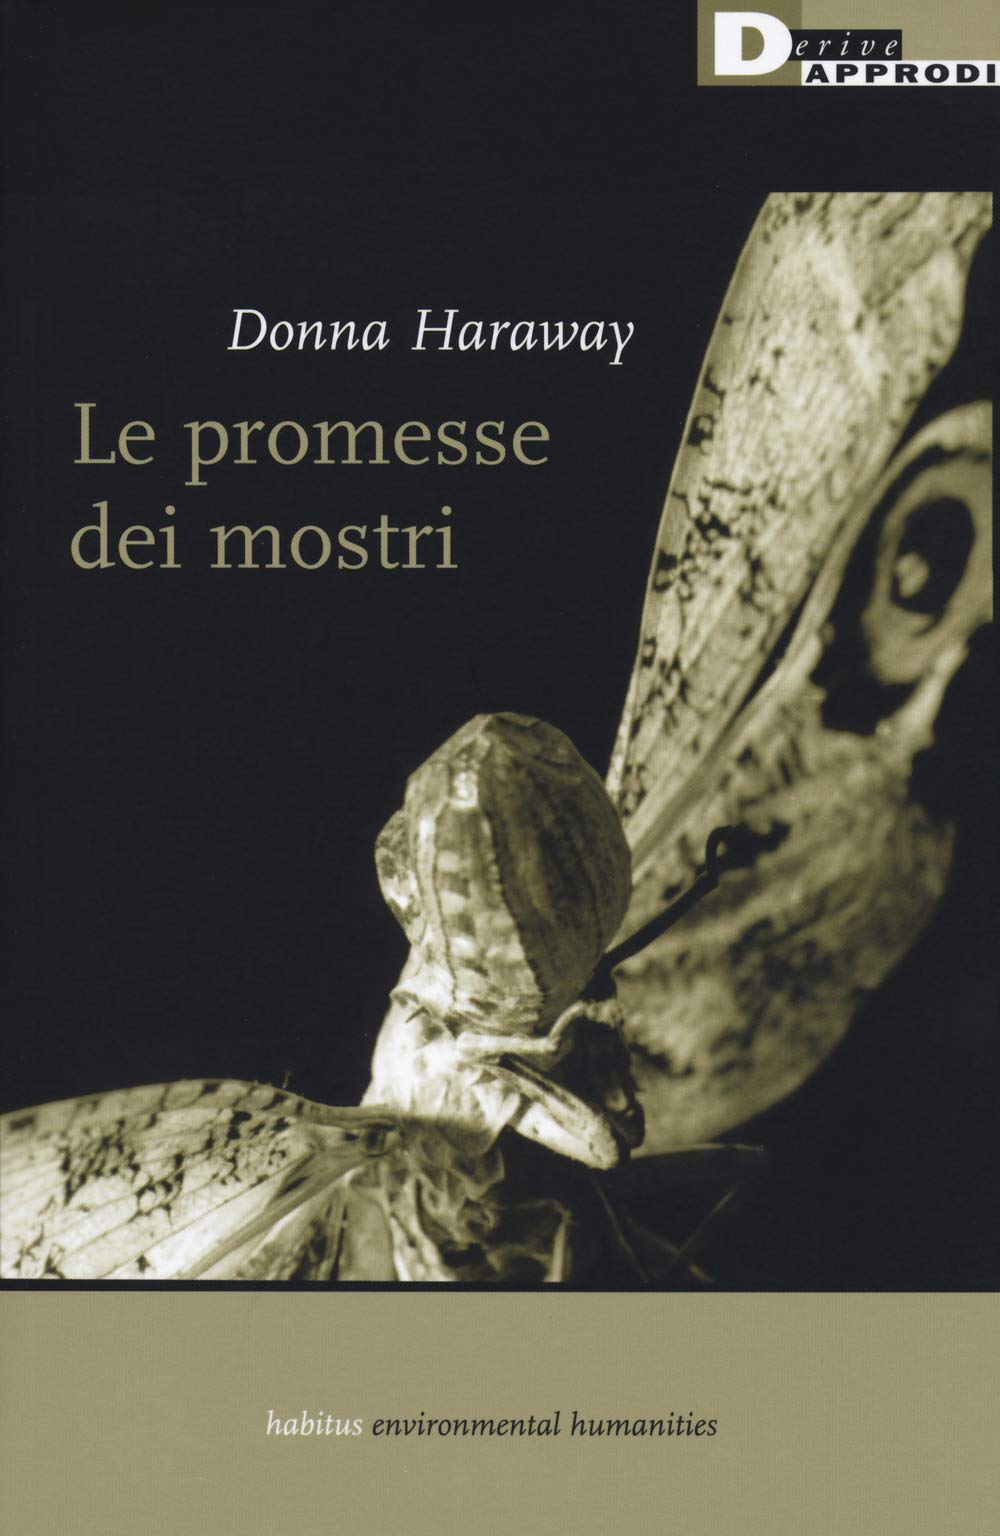 Copertina Donna Haraway, Le promesse dei mostri, DeriveApprodi